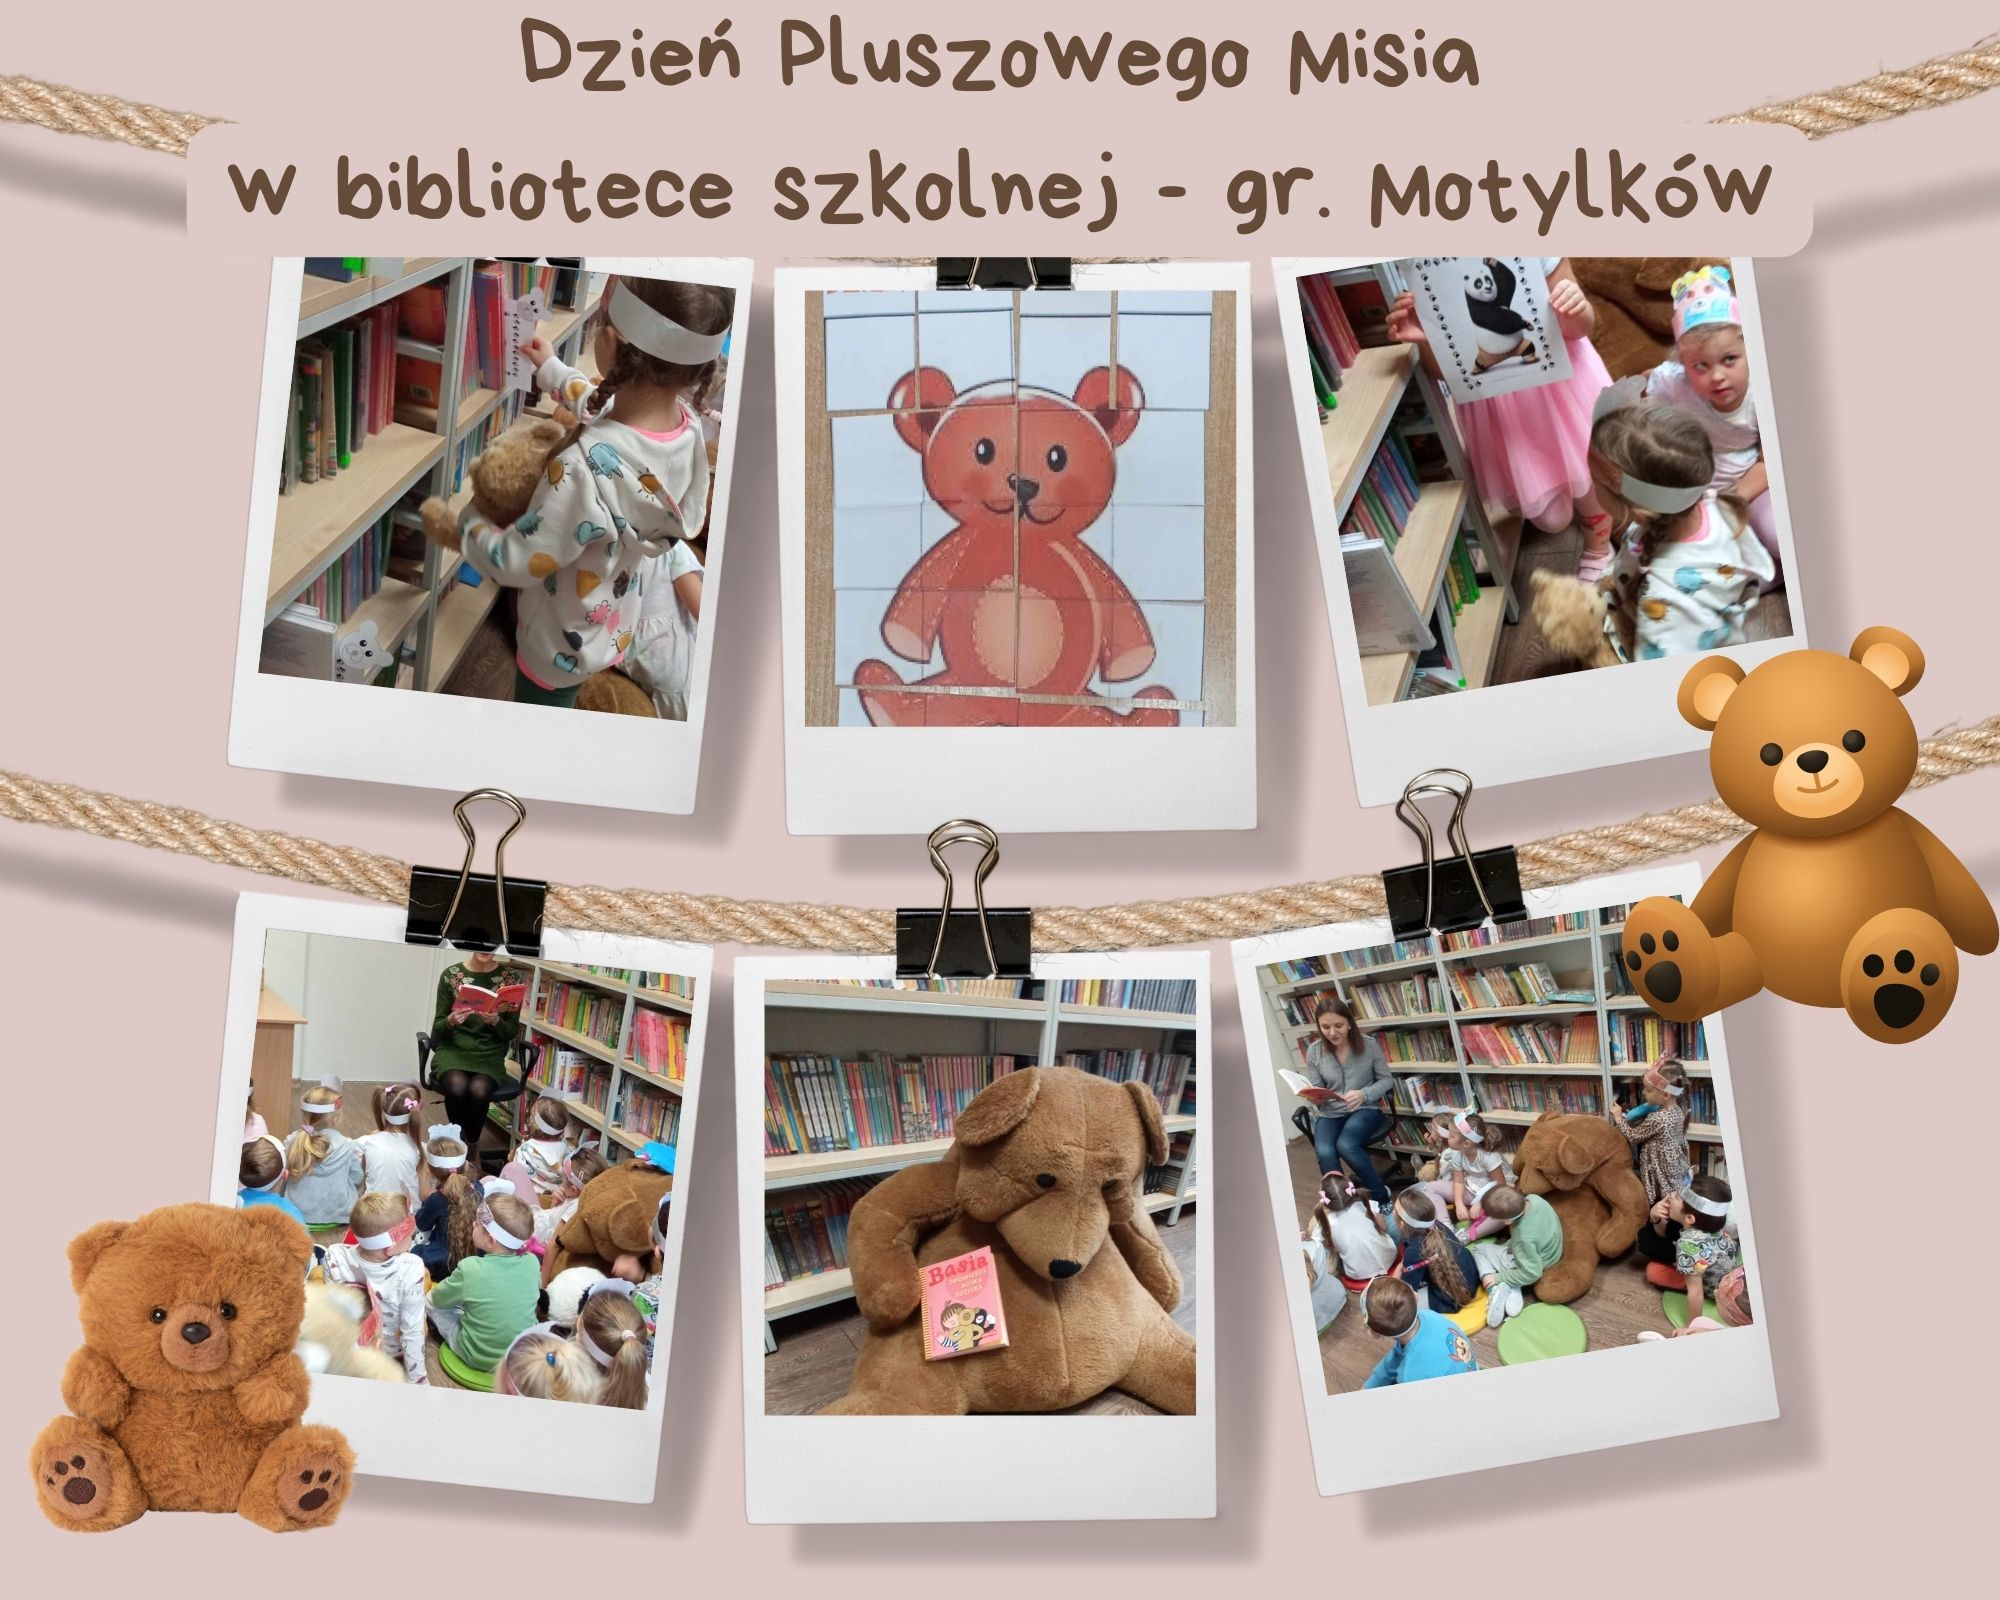 Dzień Pluszowego Misia 🐻🧸 w bibliotece szkolnej - gr. Motylków🦋